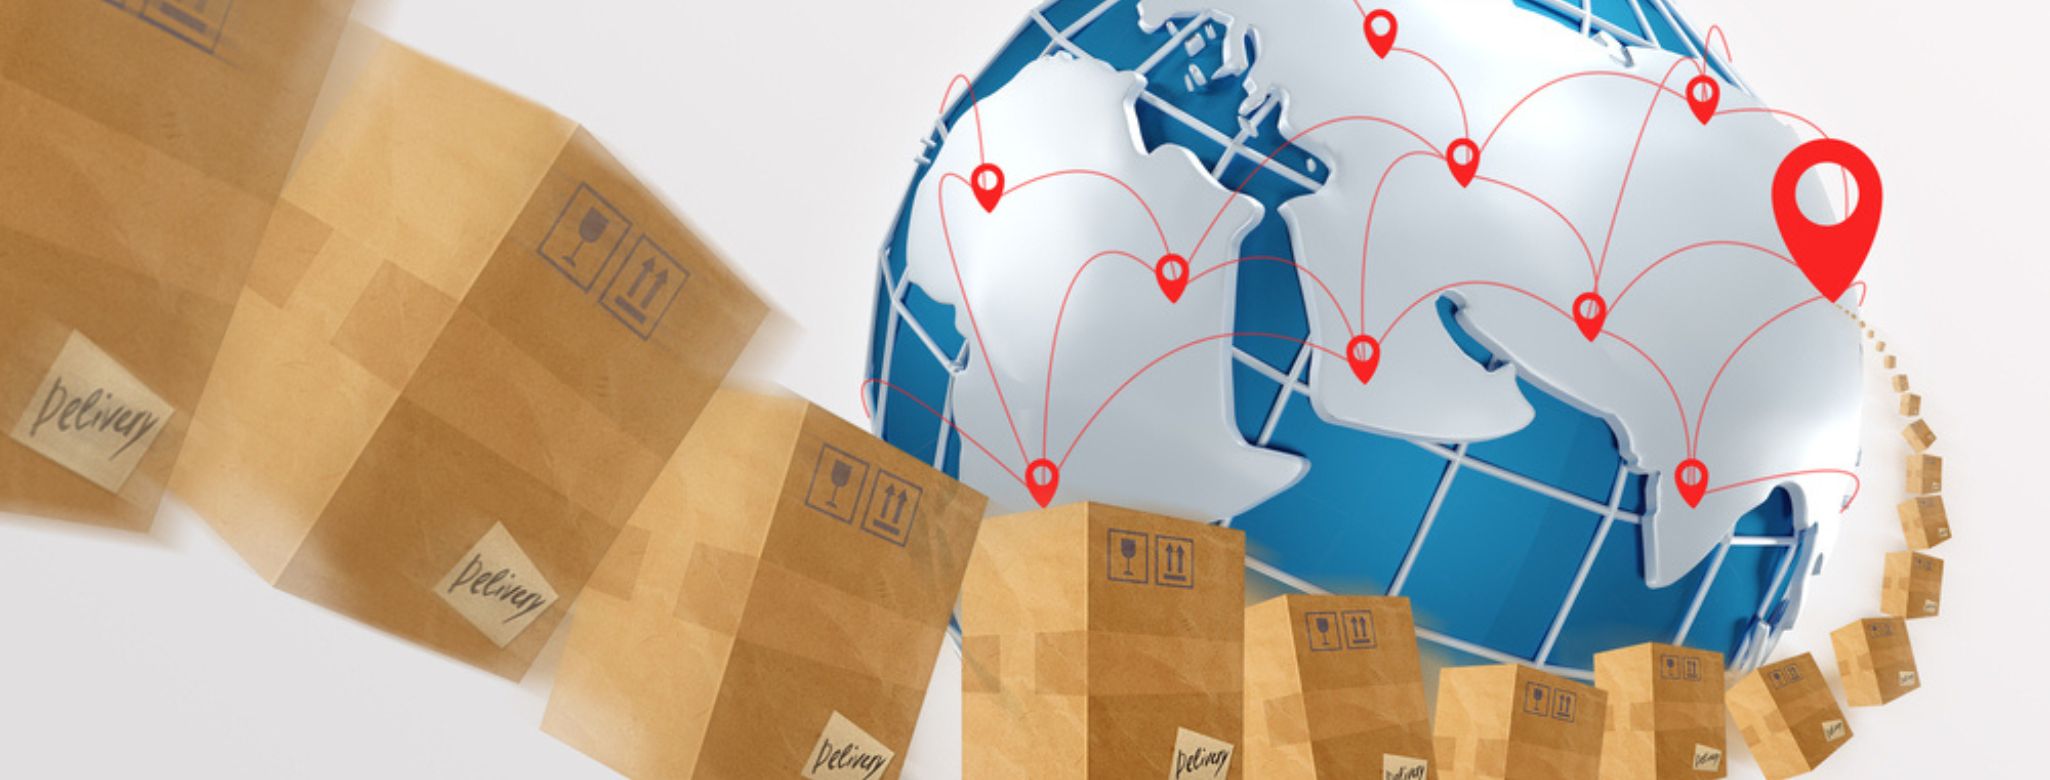 Caixas ao redor do mundo mostrando encomendas internacionais